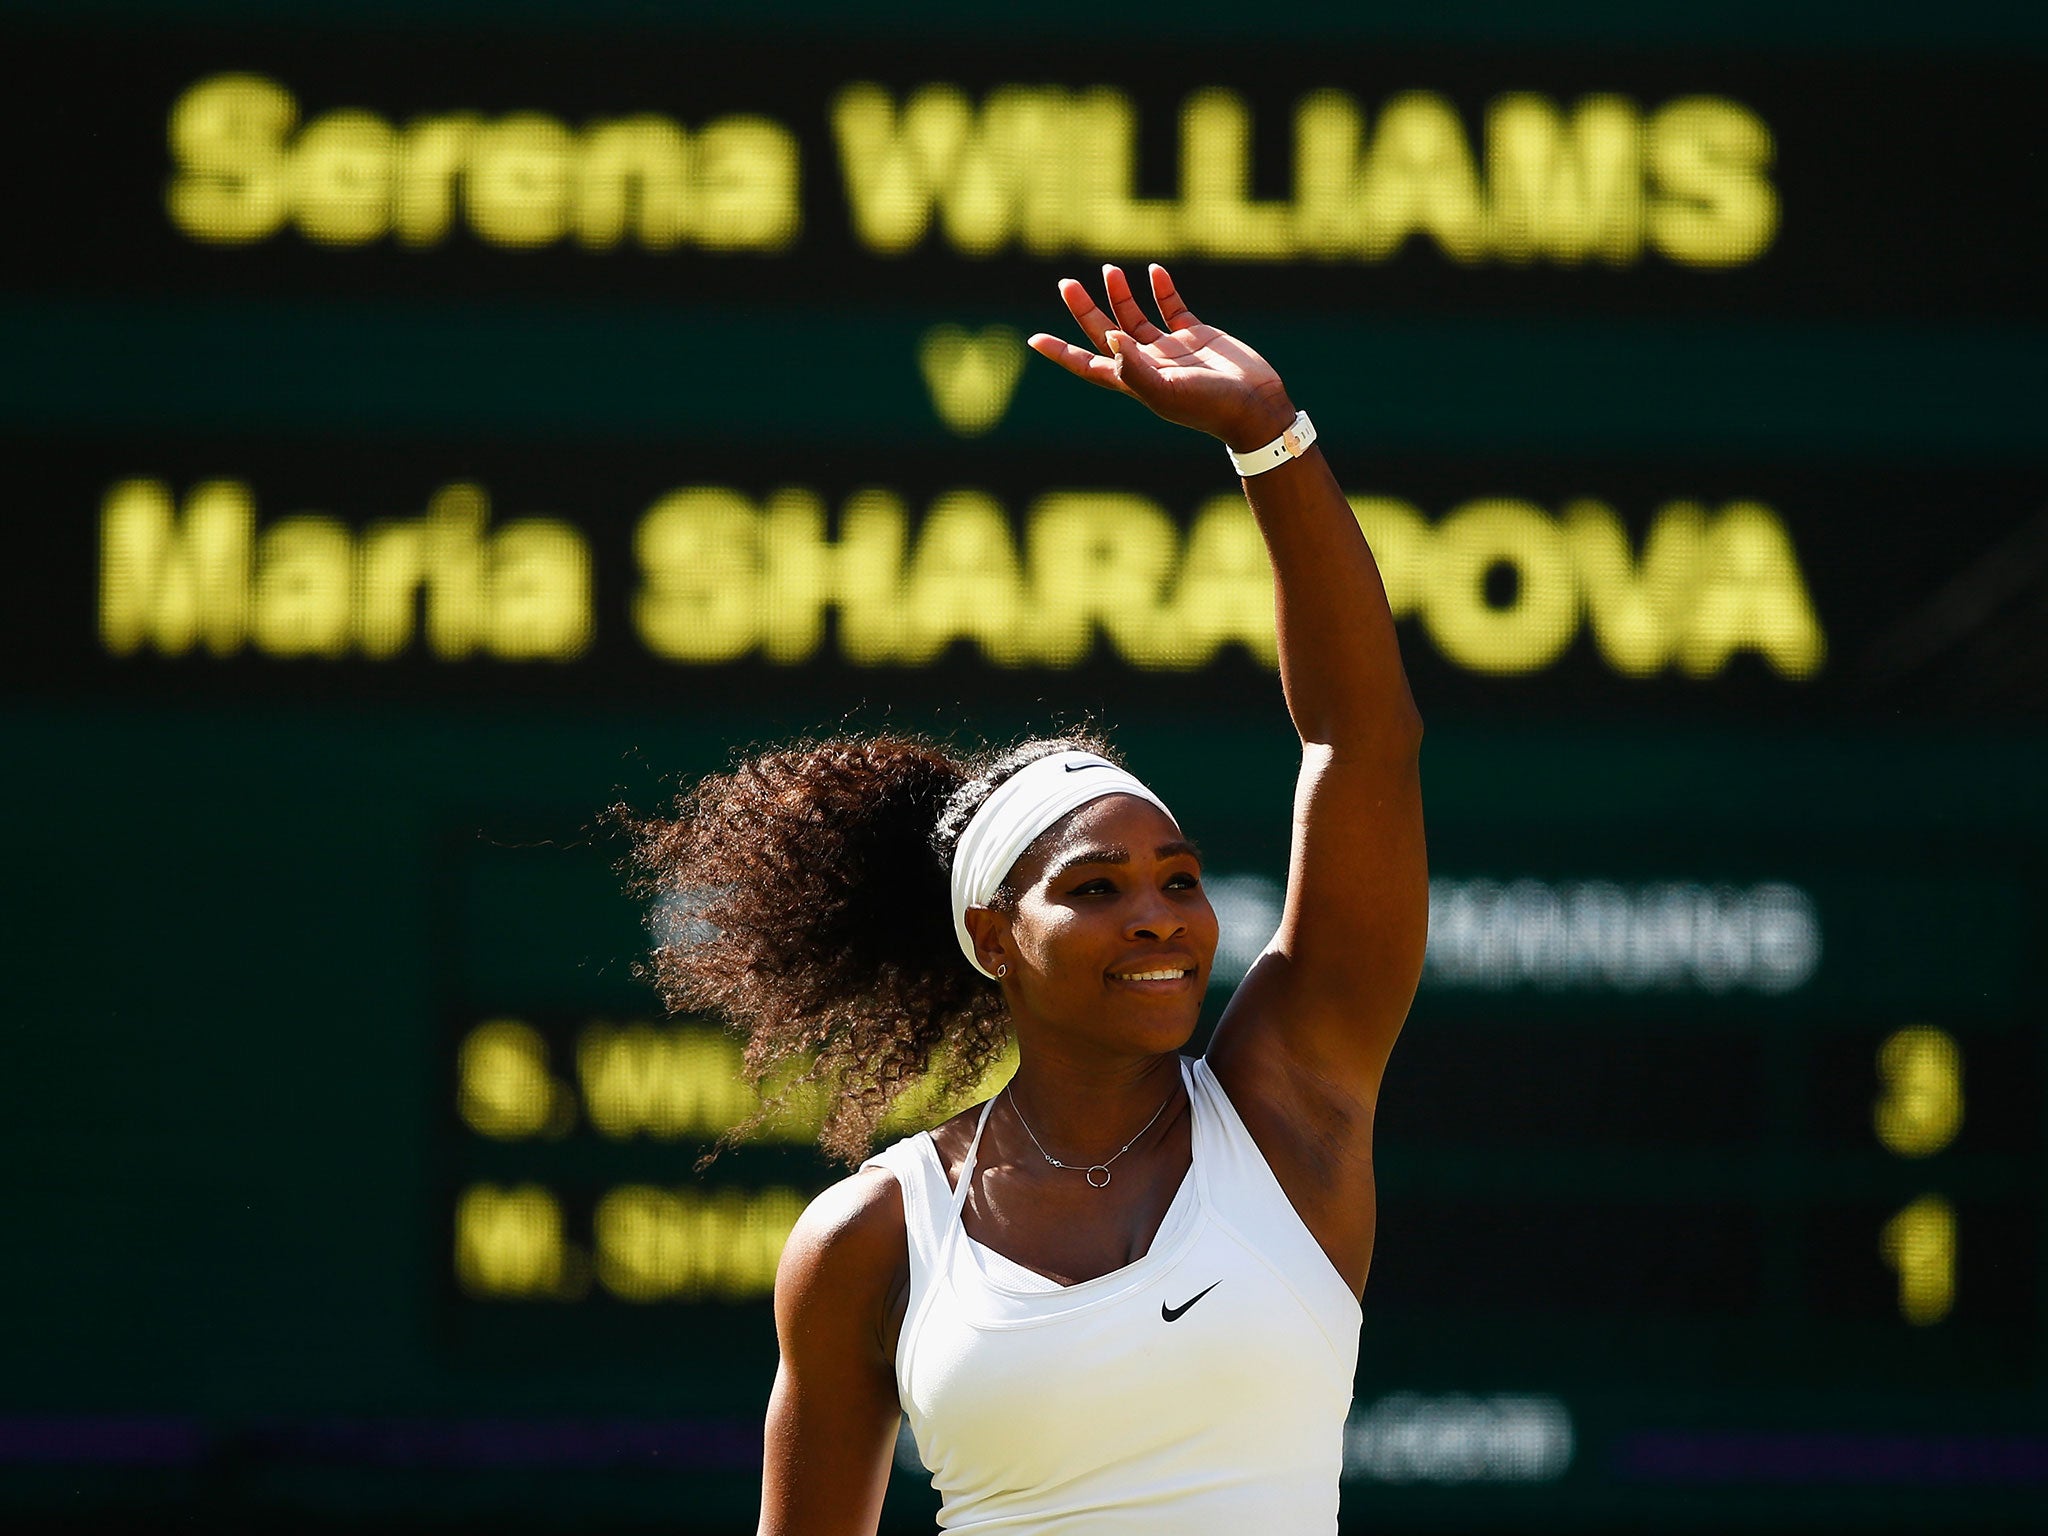 Serena Williams celebrates victory over Maria Sharapova in the semi-finals